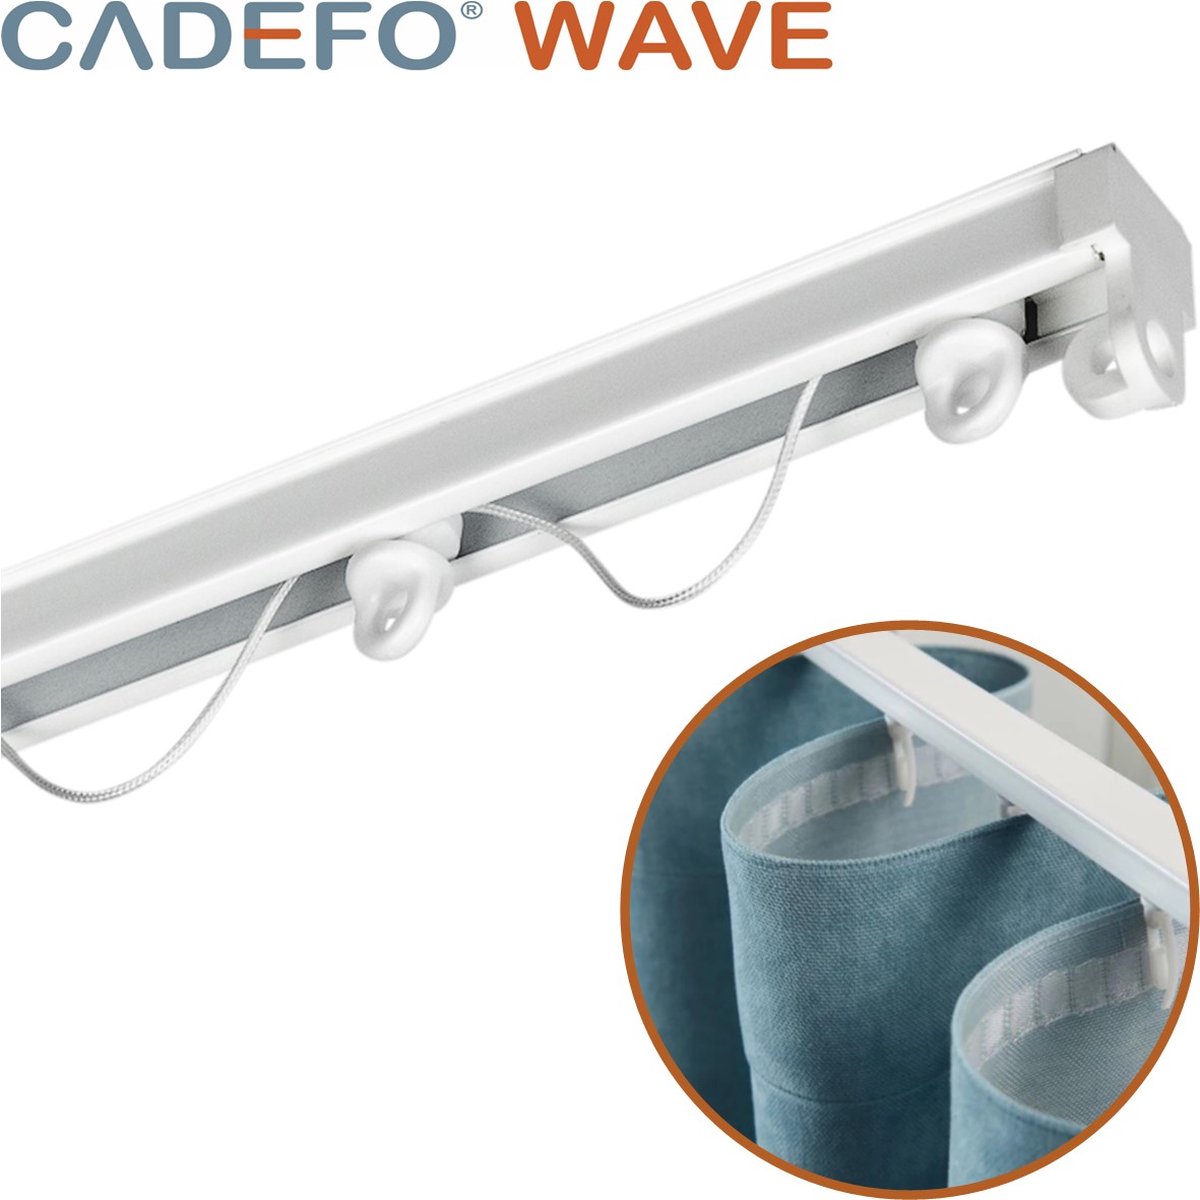 CADEFO WAVE (401 - 450 cm) Gordijnrails - Compleet op maat! - UIT 1 STUK - Leverbaar tot 6 meter - Plafondbevestiging - Lengte 434 cm